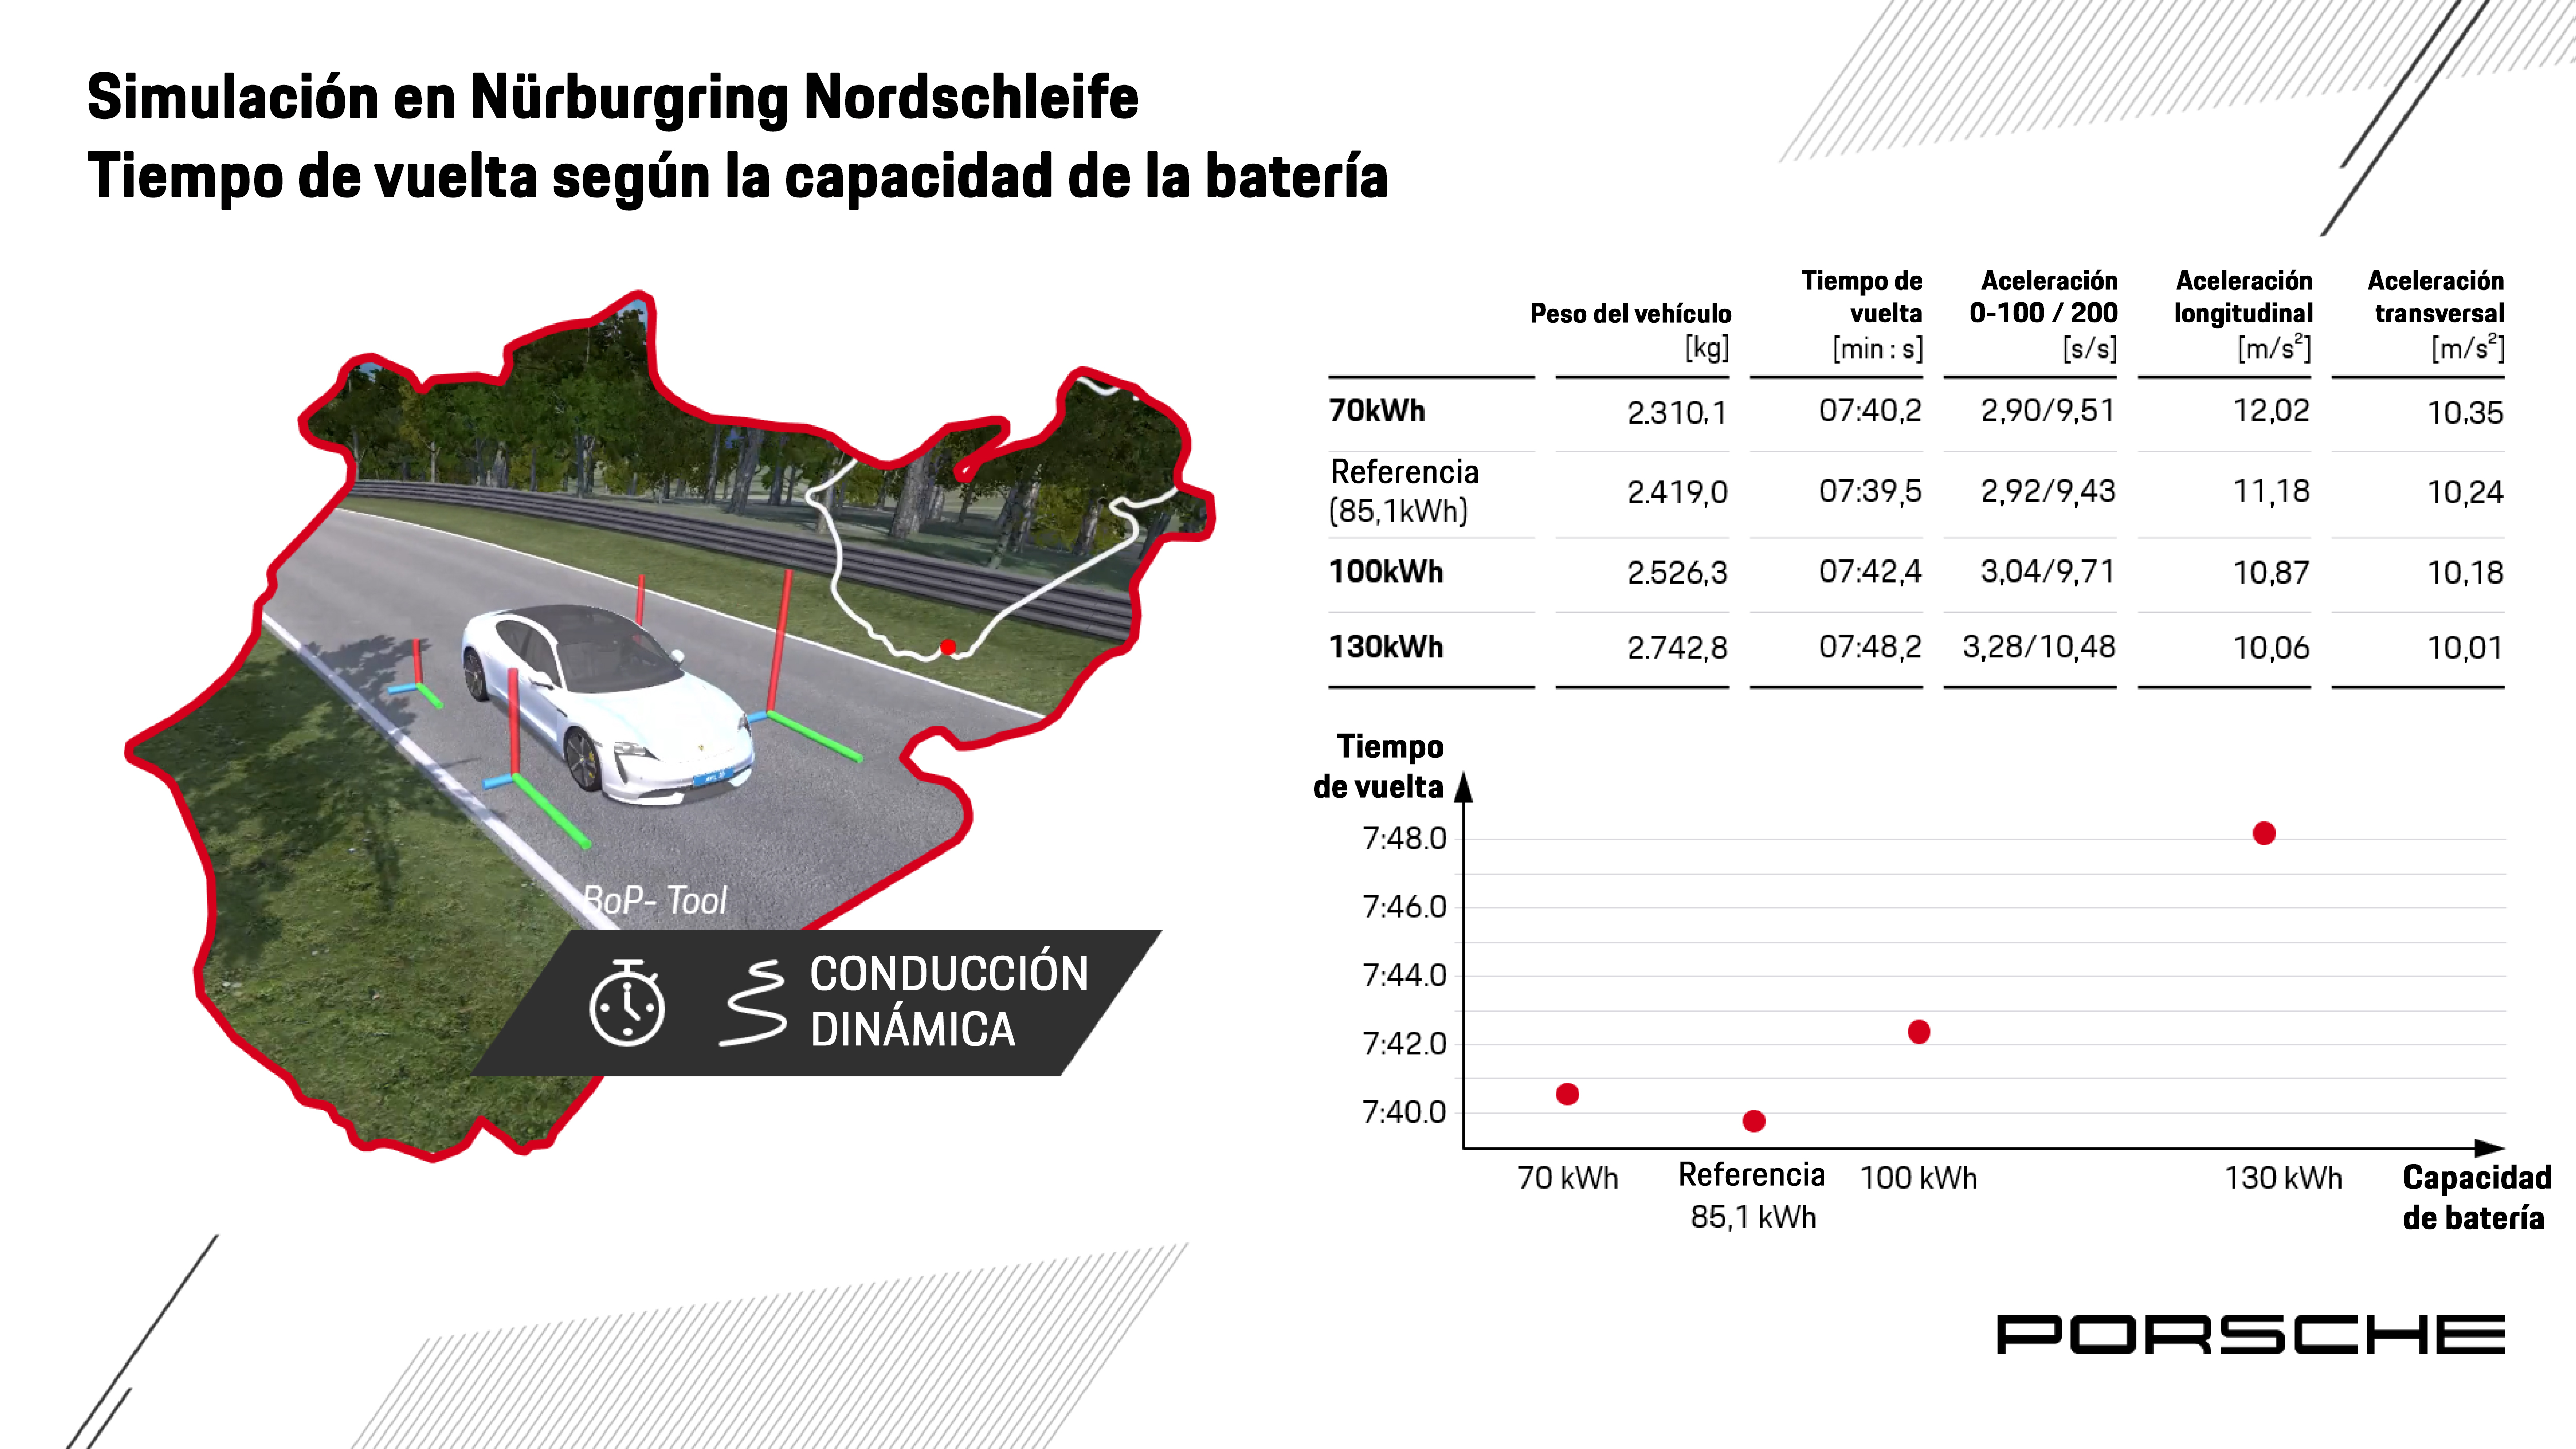 Equilibrio óptimo en el tamaño de la batería, infografía, 2021, Porsche AG